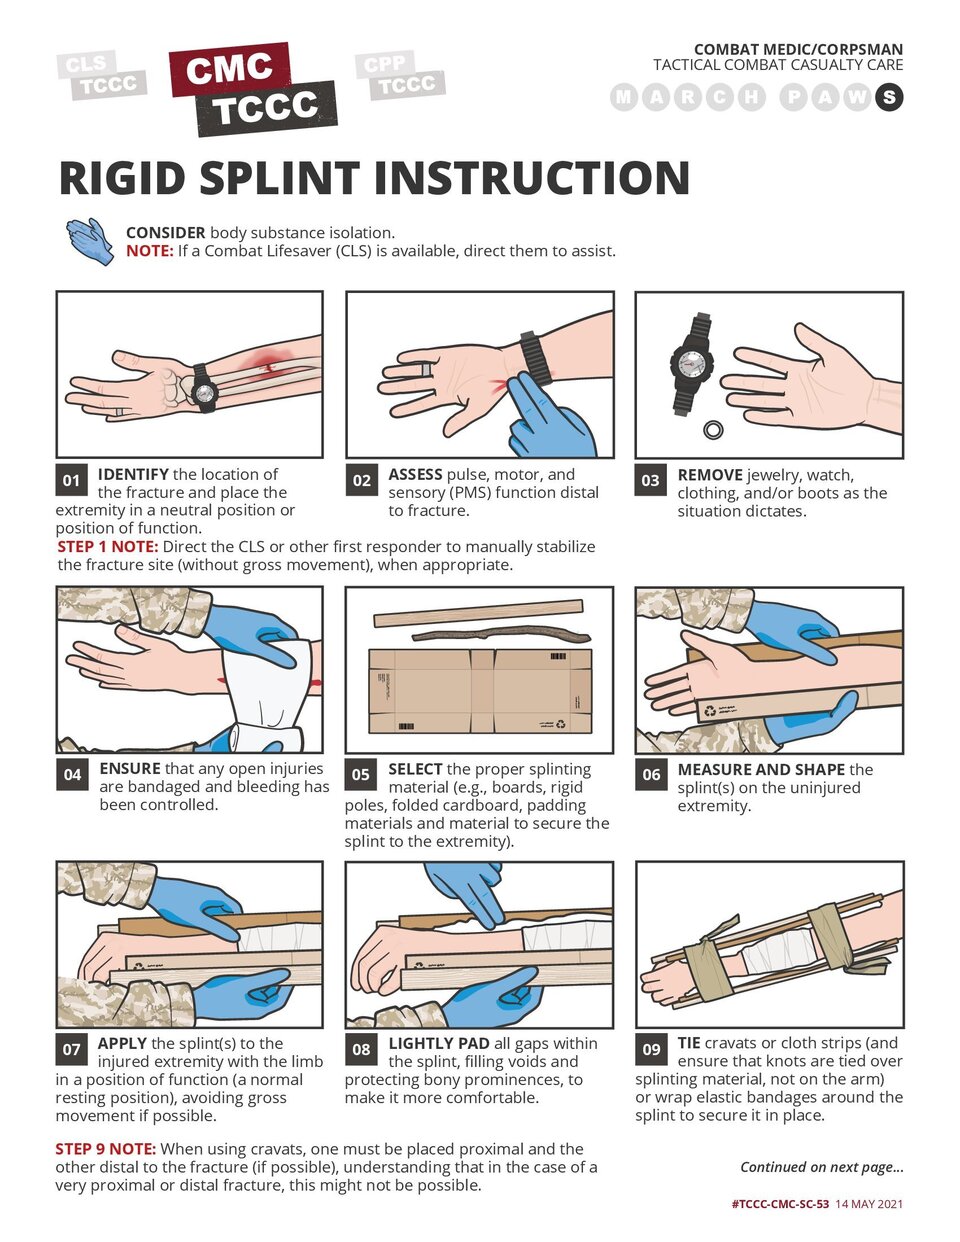 Rigid Splint Instruction